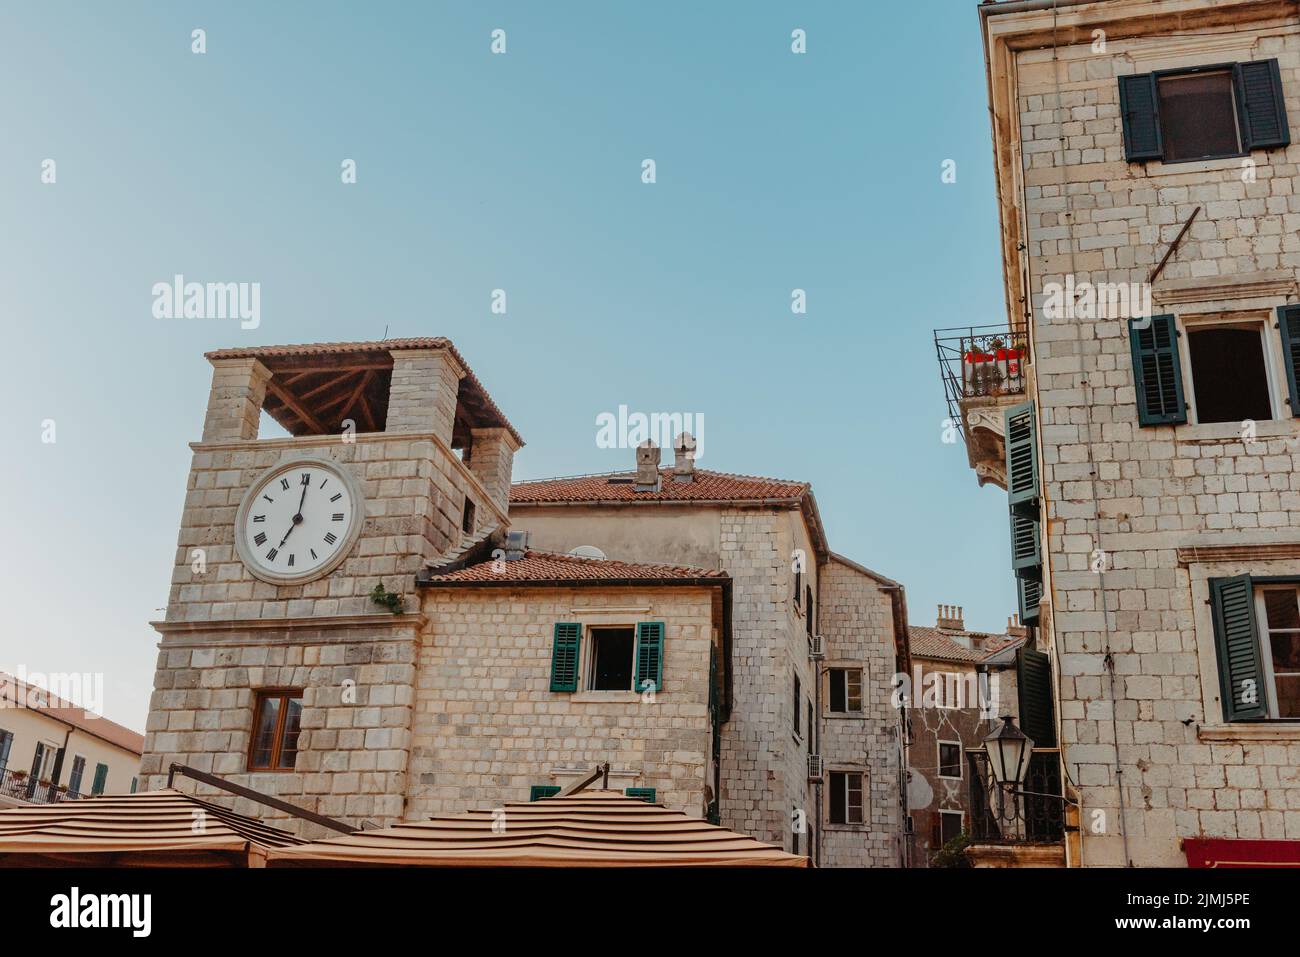 Alte europäische Architektur. Straße in der Altstadt von Italien, Montenegro, Griechenland etc Stockfoto